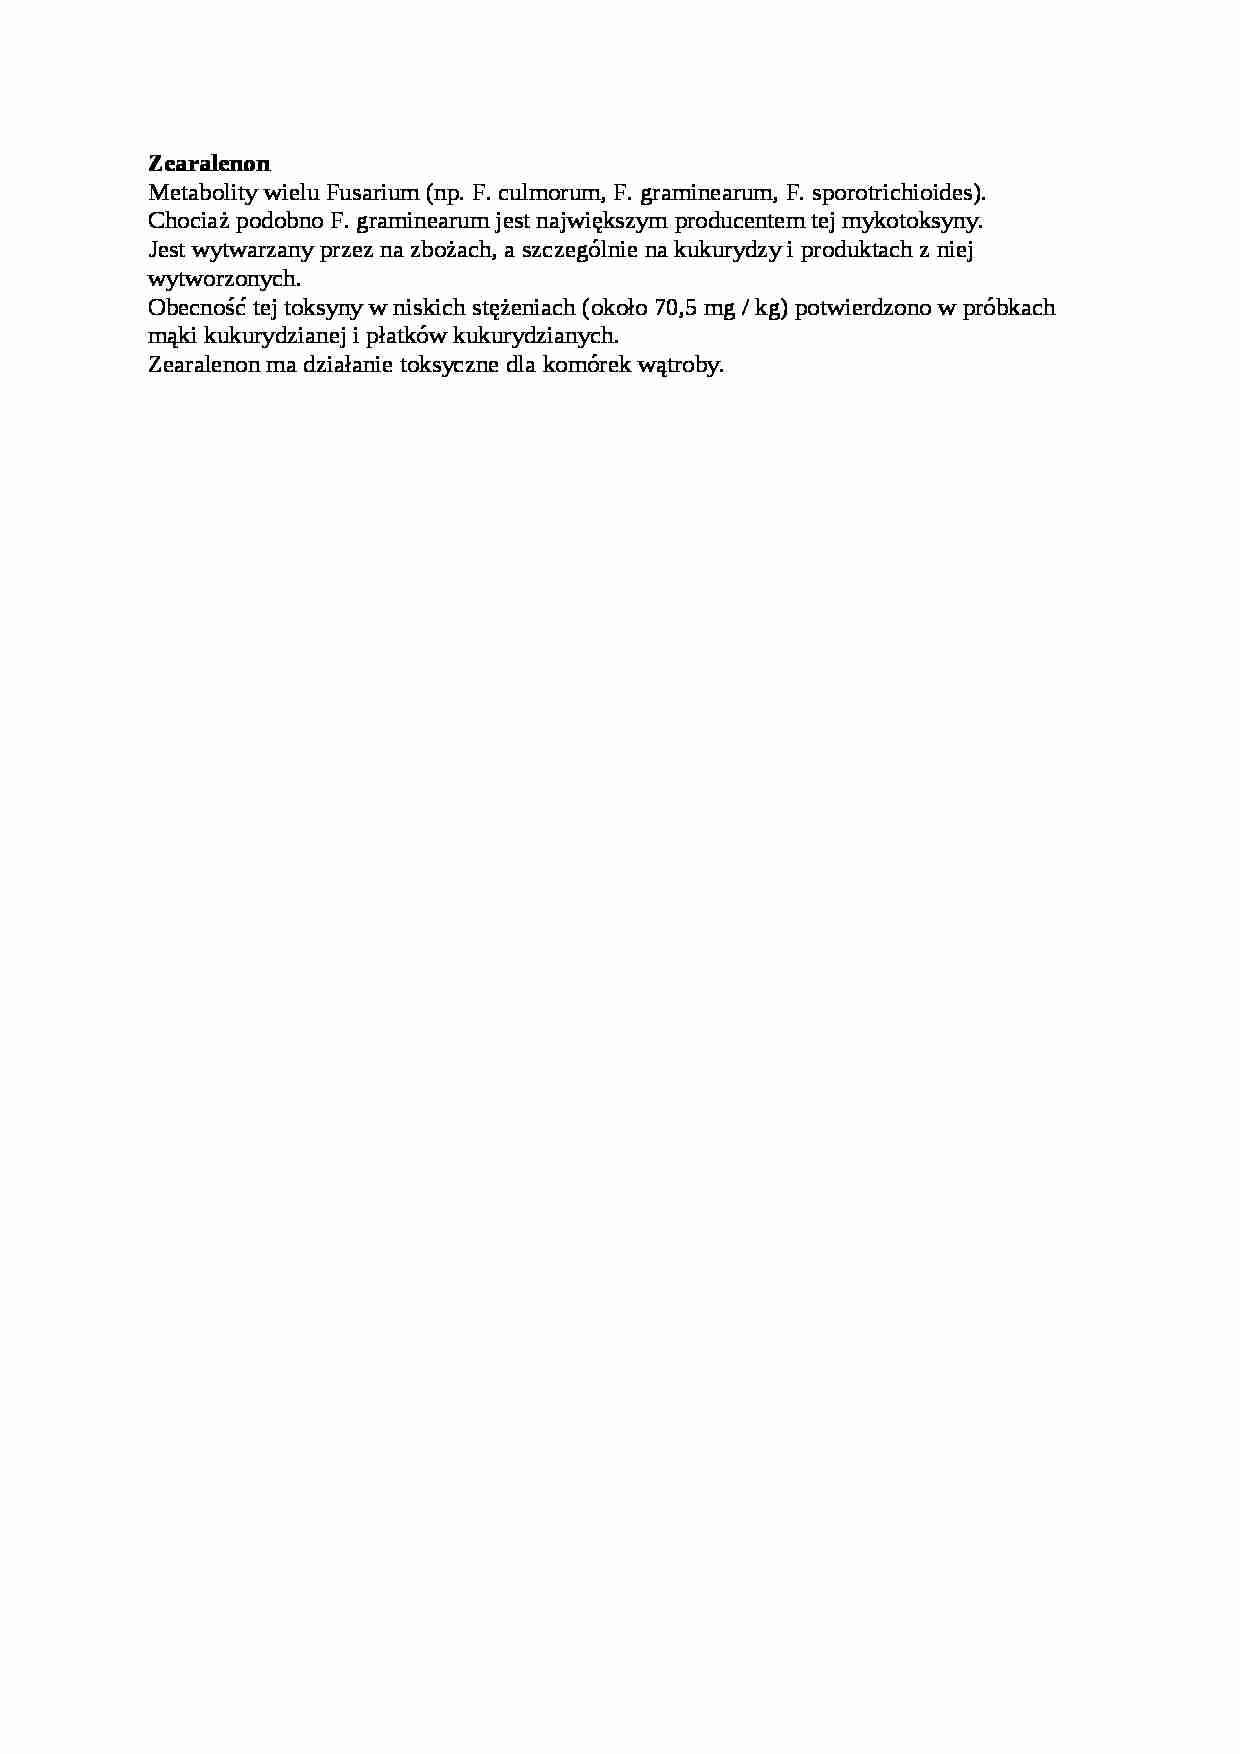 Opracowanie - zearalenon, sem IV - strona 1